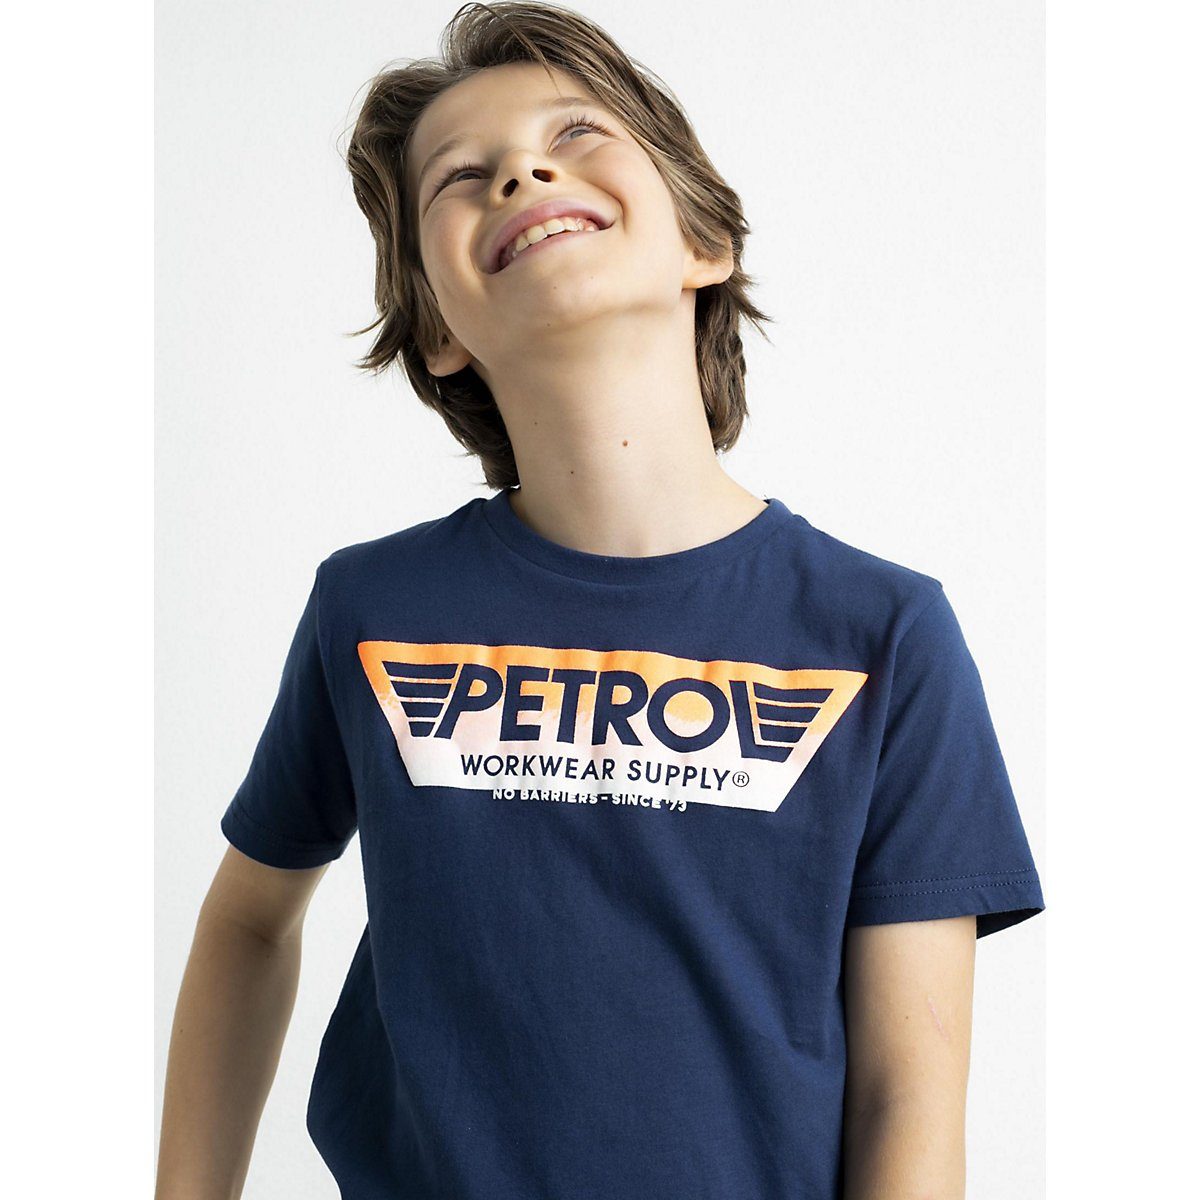 Kinder Teens (Gr. 128 - 182) Petrol Industries T-Shirt T-Shirt für Jungen